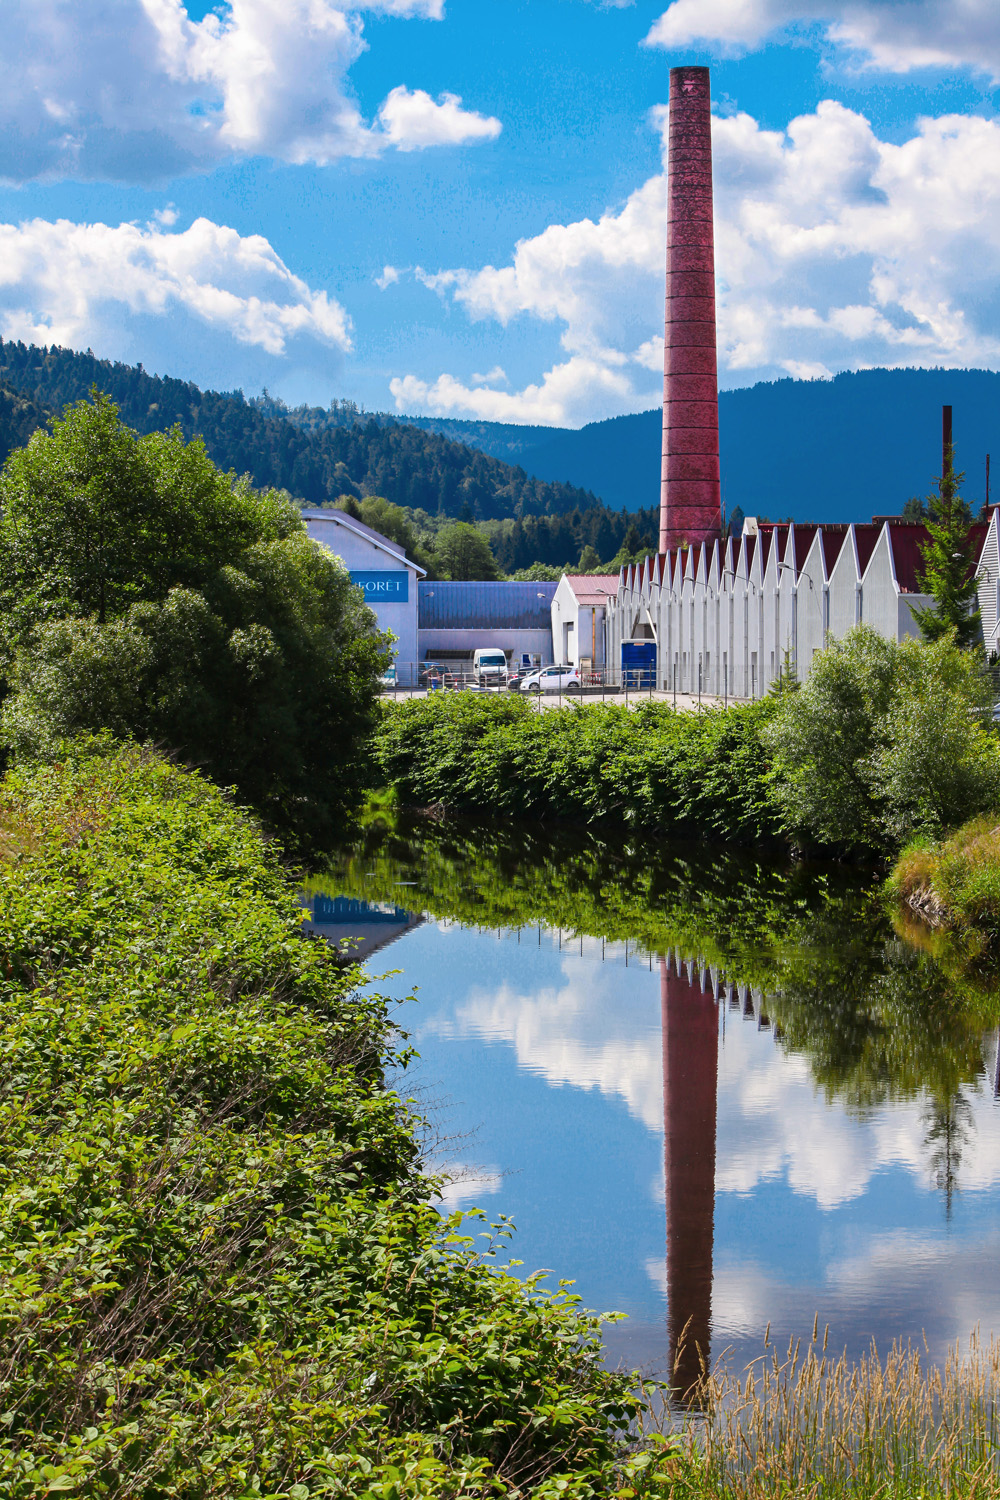 Vue sur une usine avec une grande cheminée en briques rouges, située le long d'une petite rivière et dans un cadre verdoyant, dans les Vosges